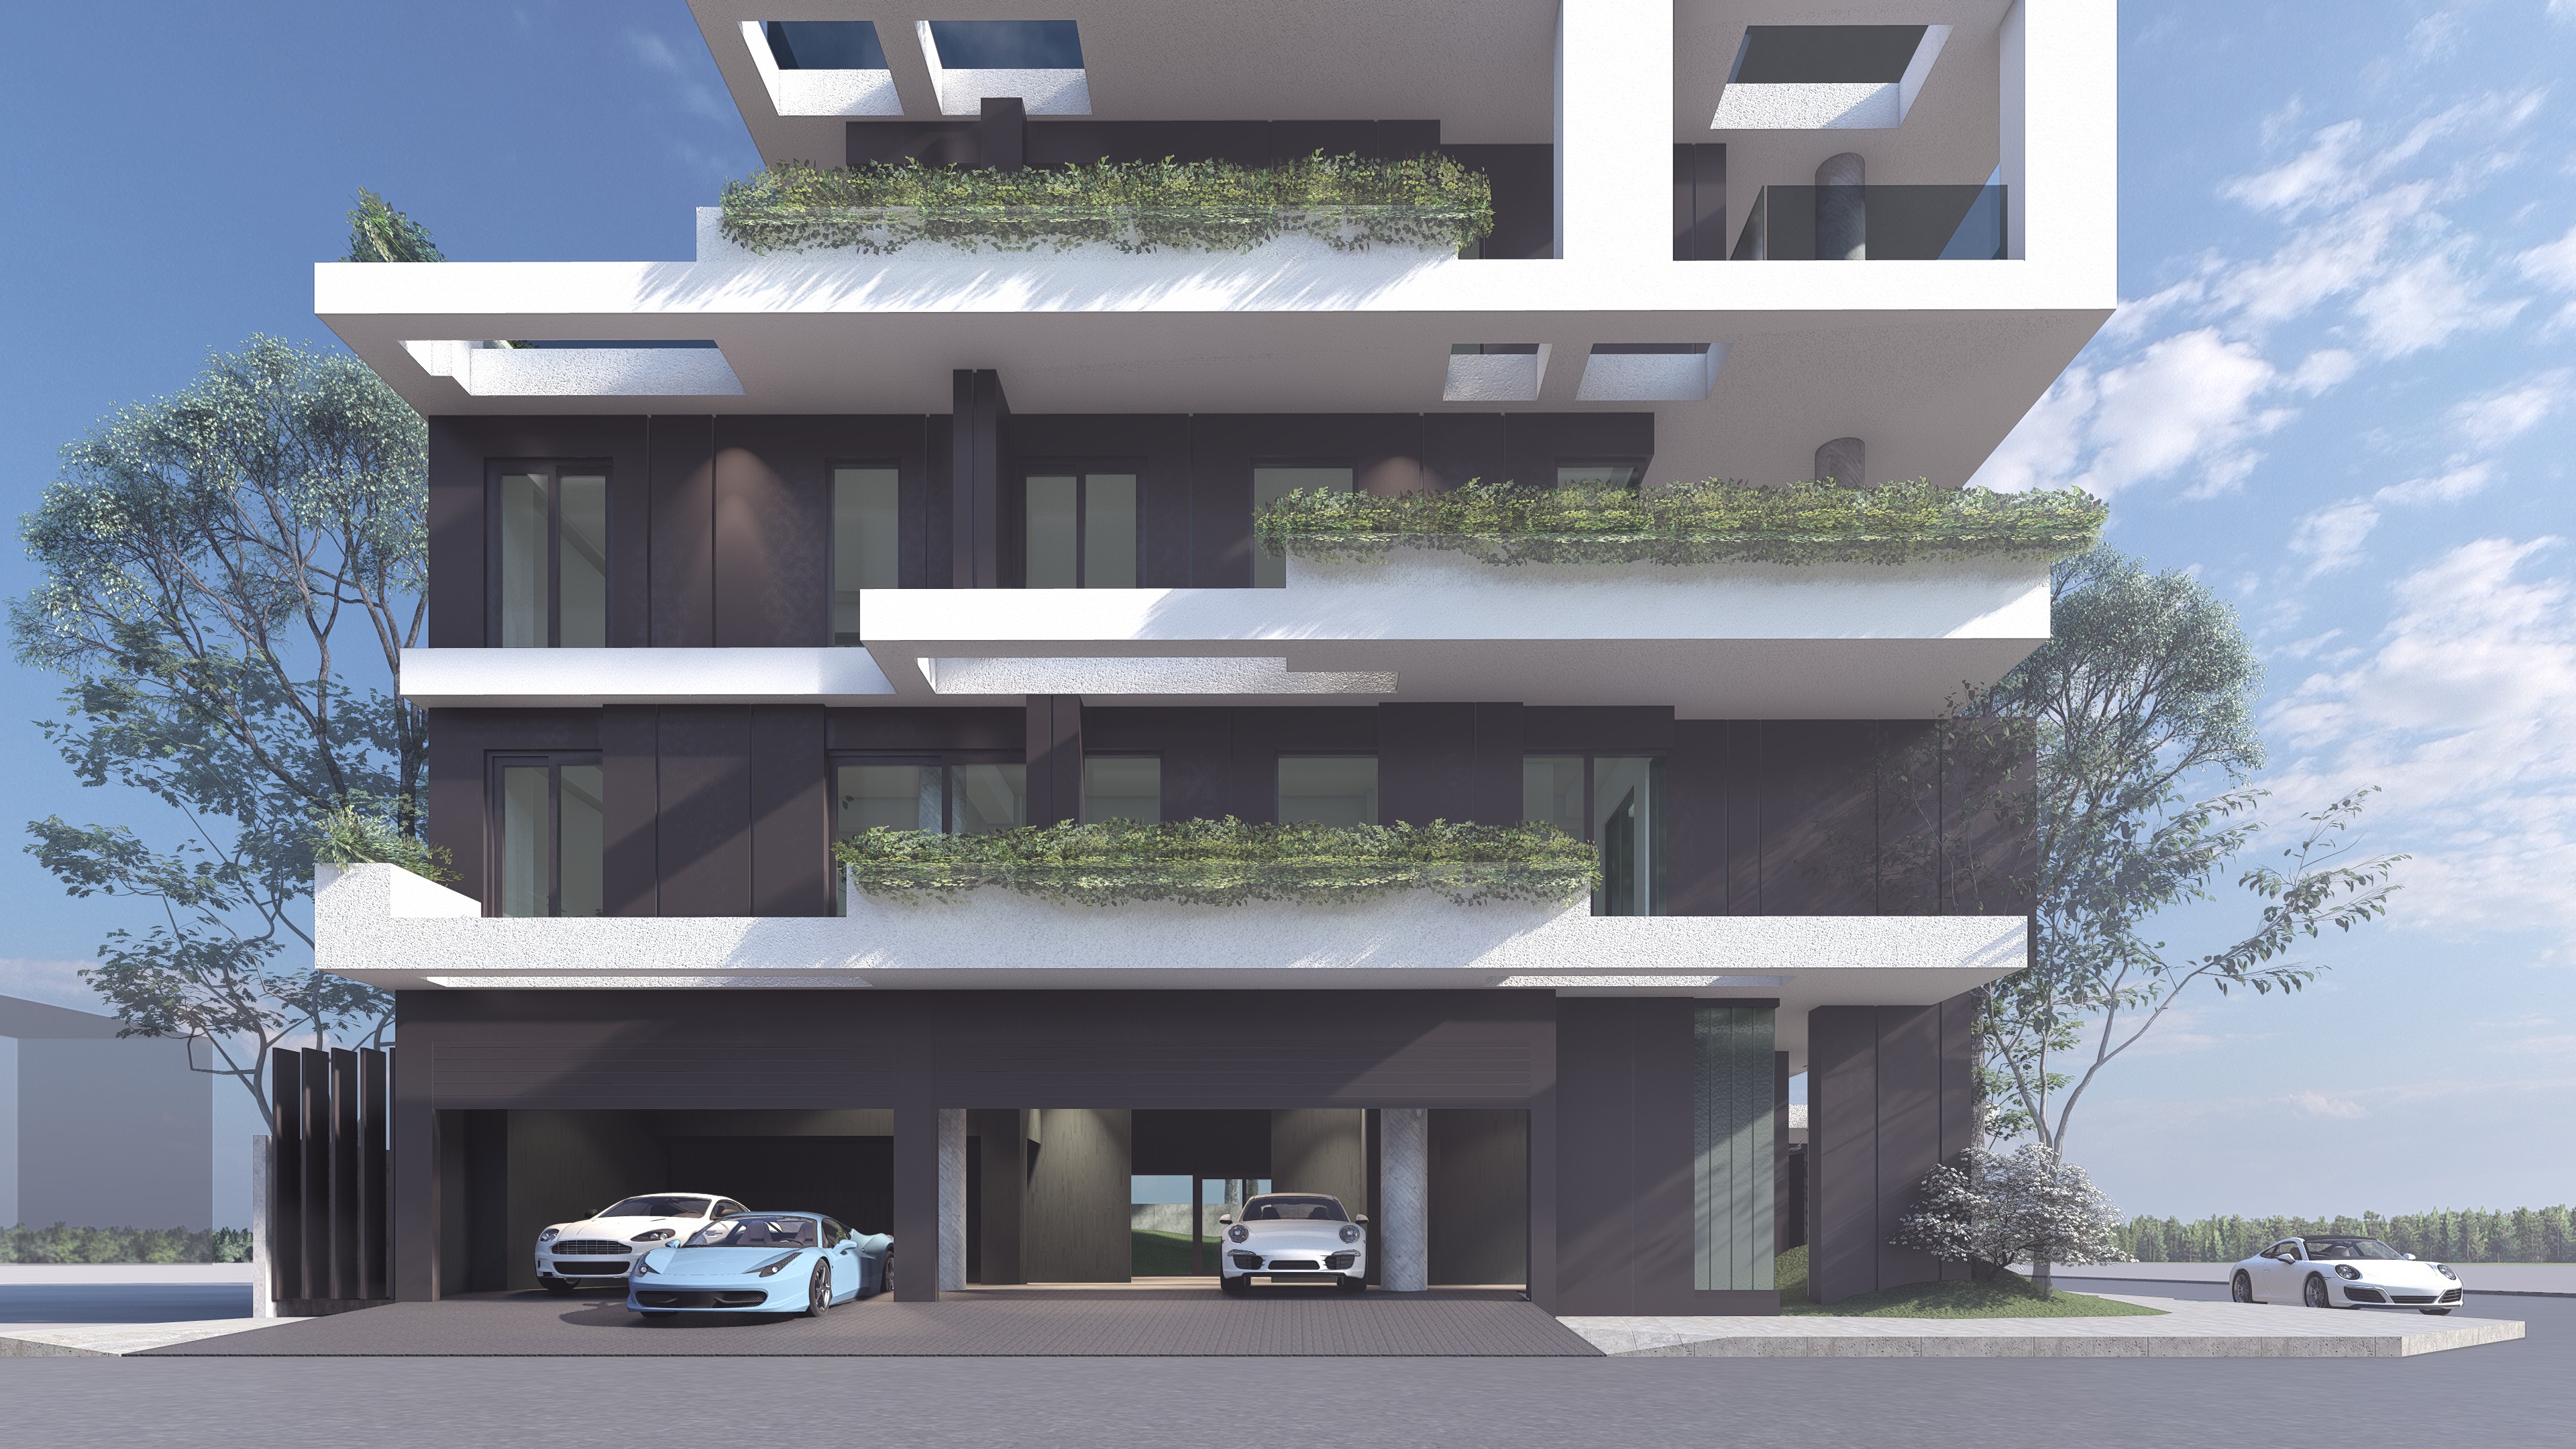 A rendering of a futuristic, open-air car garage.